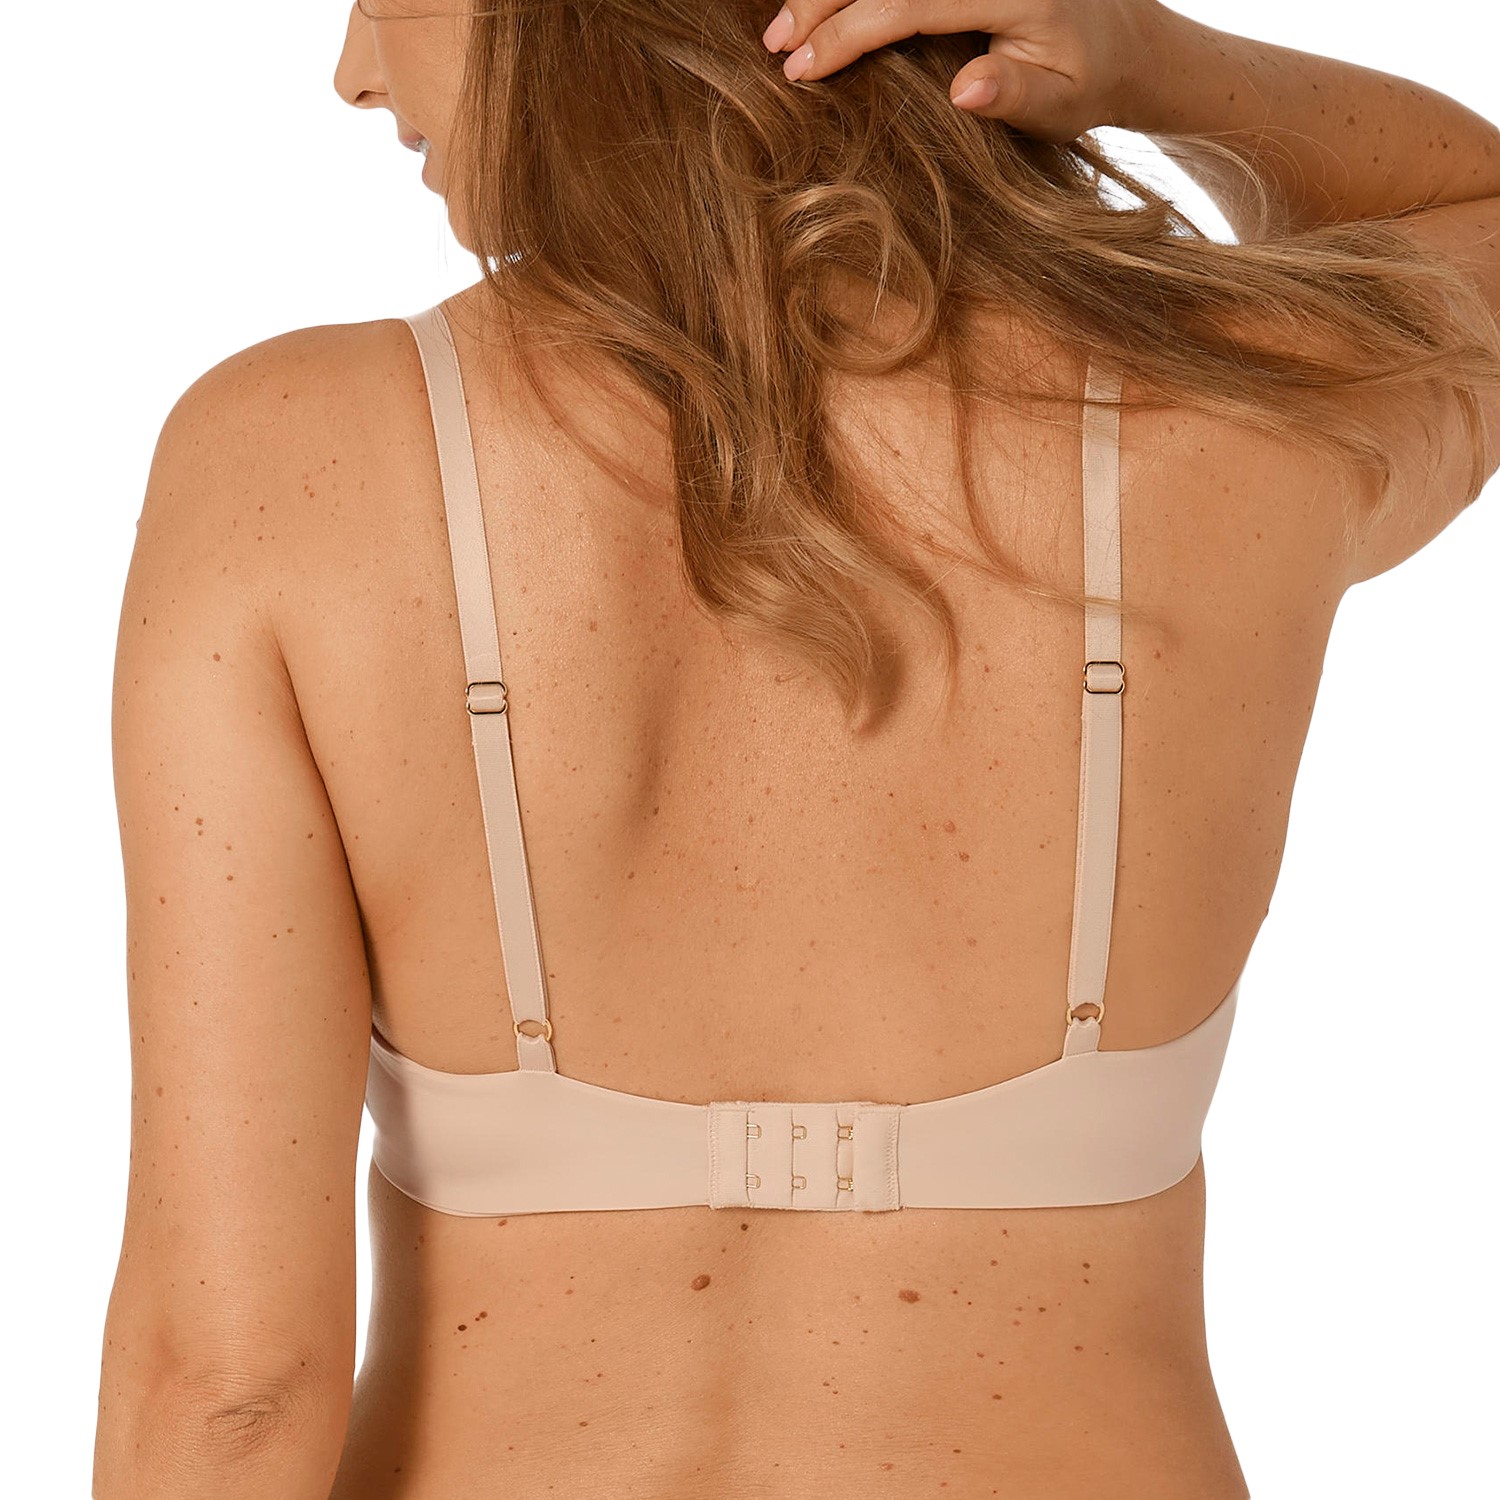 Triumph Body Make-Up Essentials W - Wired bra - Bras - Underwear